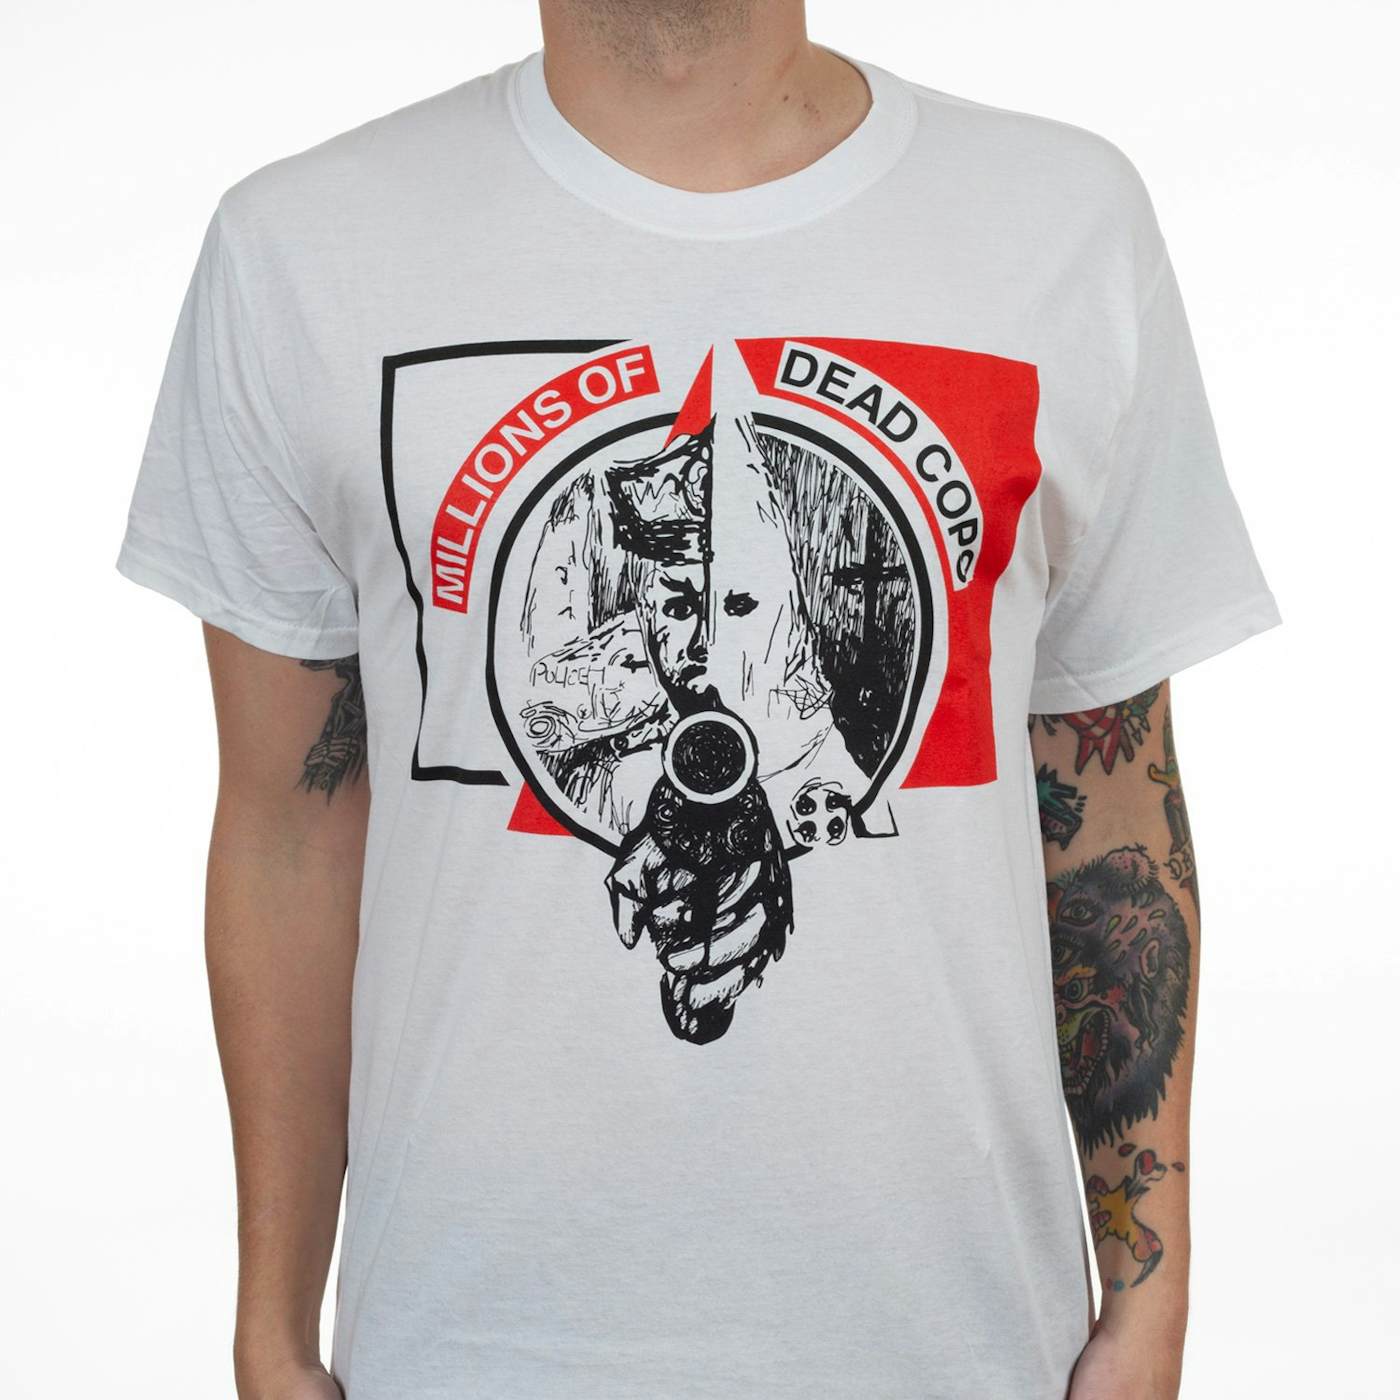 MDC "KKKop" T-Shirt